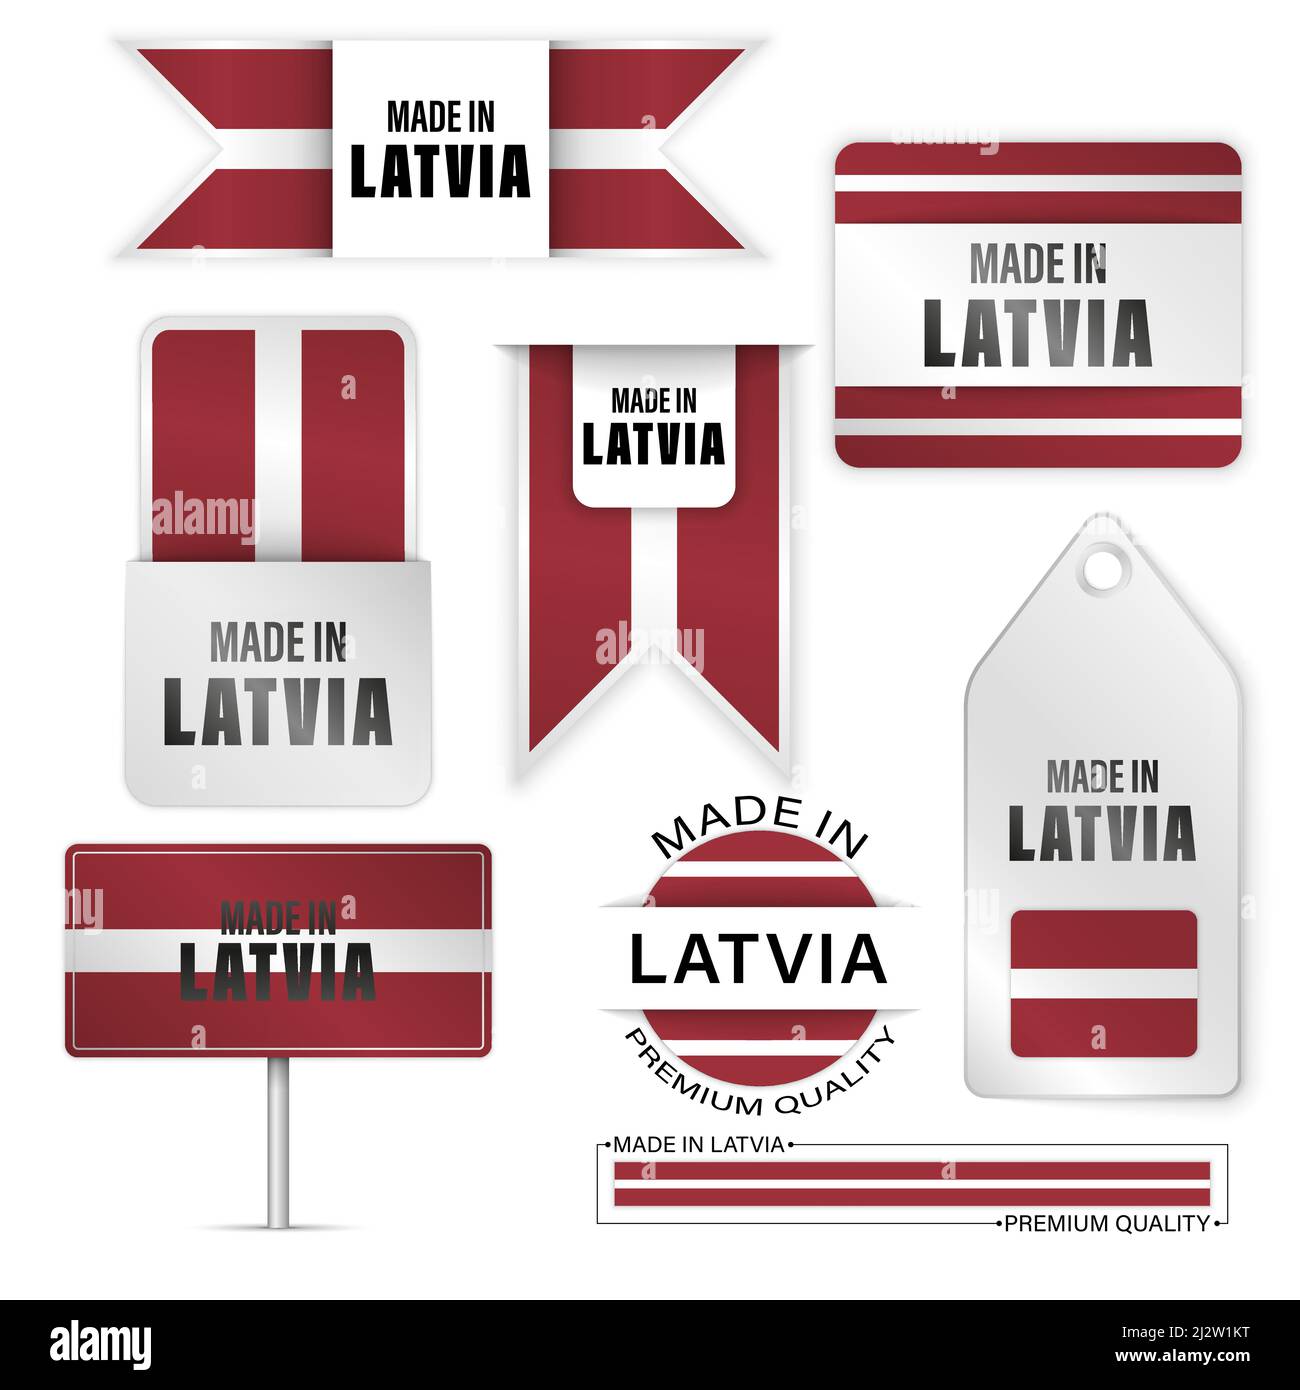 Prodotto in Lettonia grafica ed etichette set. Alcuni elementi di impatto per l'uso che si desidera fare di esso. Illustrazione Vettoriale